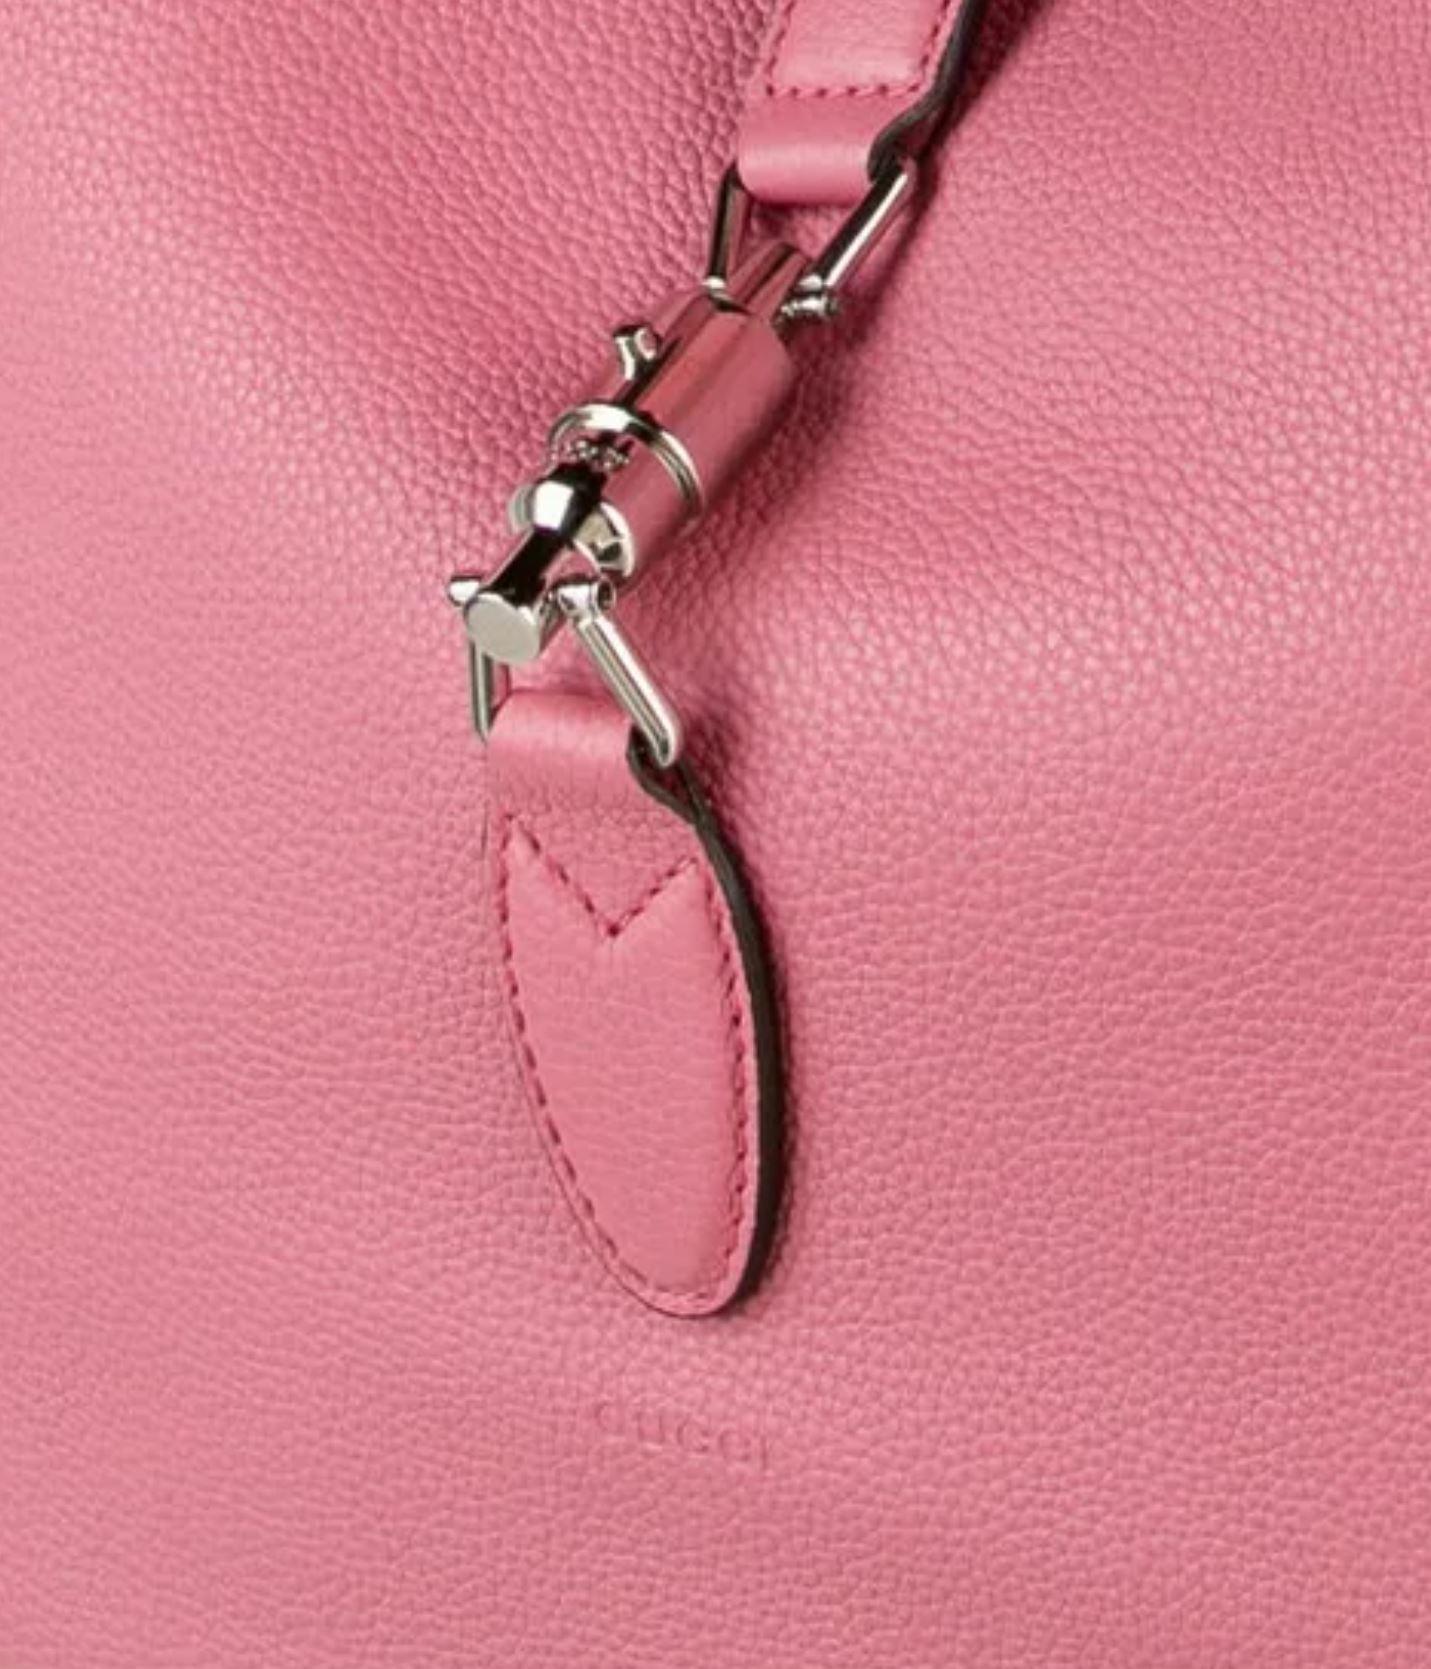 Nouveauté Gucci extra large sac Jackie O Gaga en cuir rose 3595 $ automne 2014 en vente 11